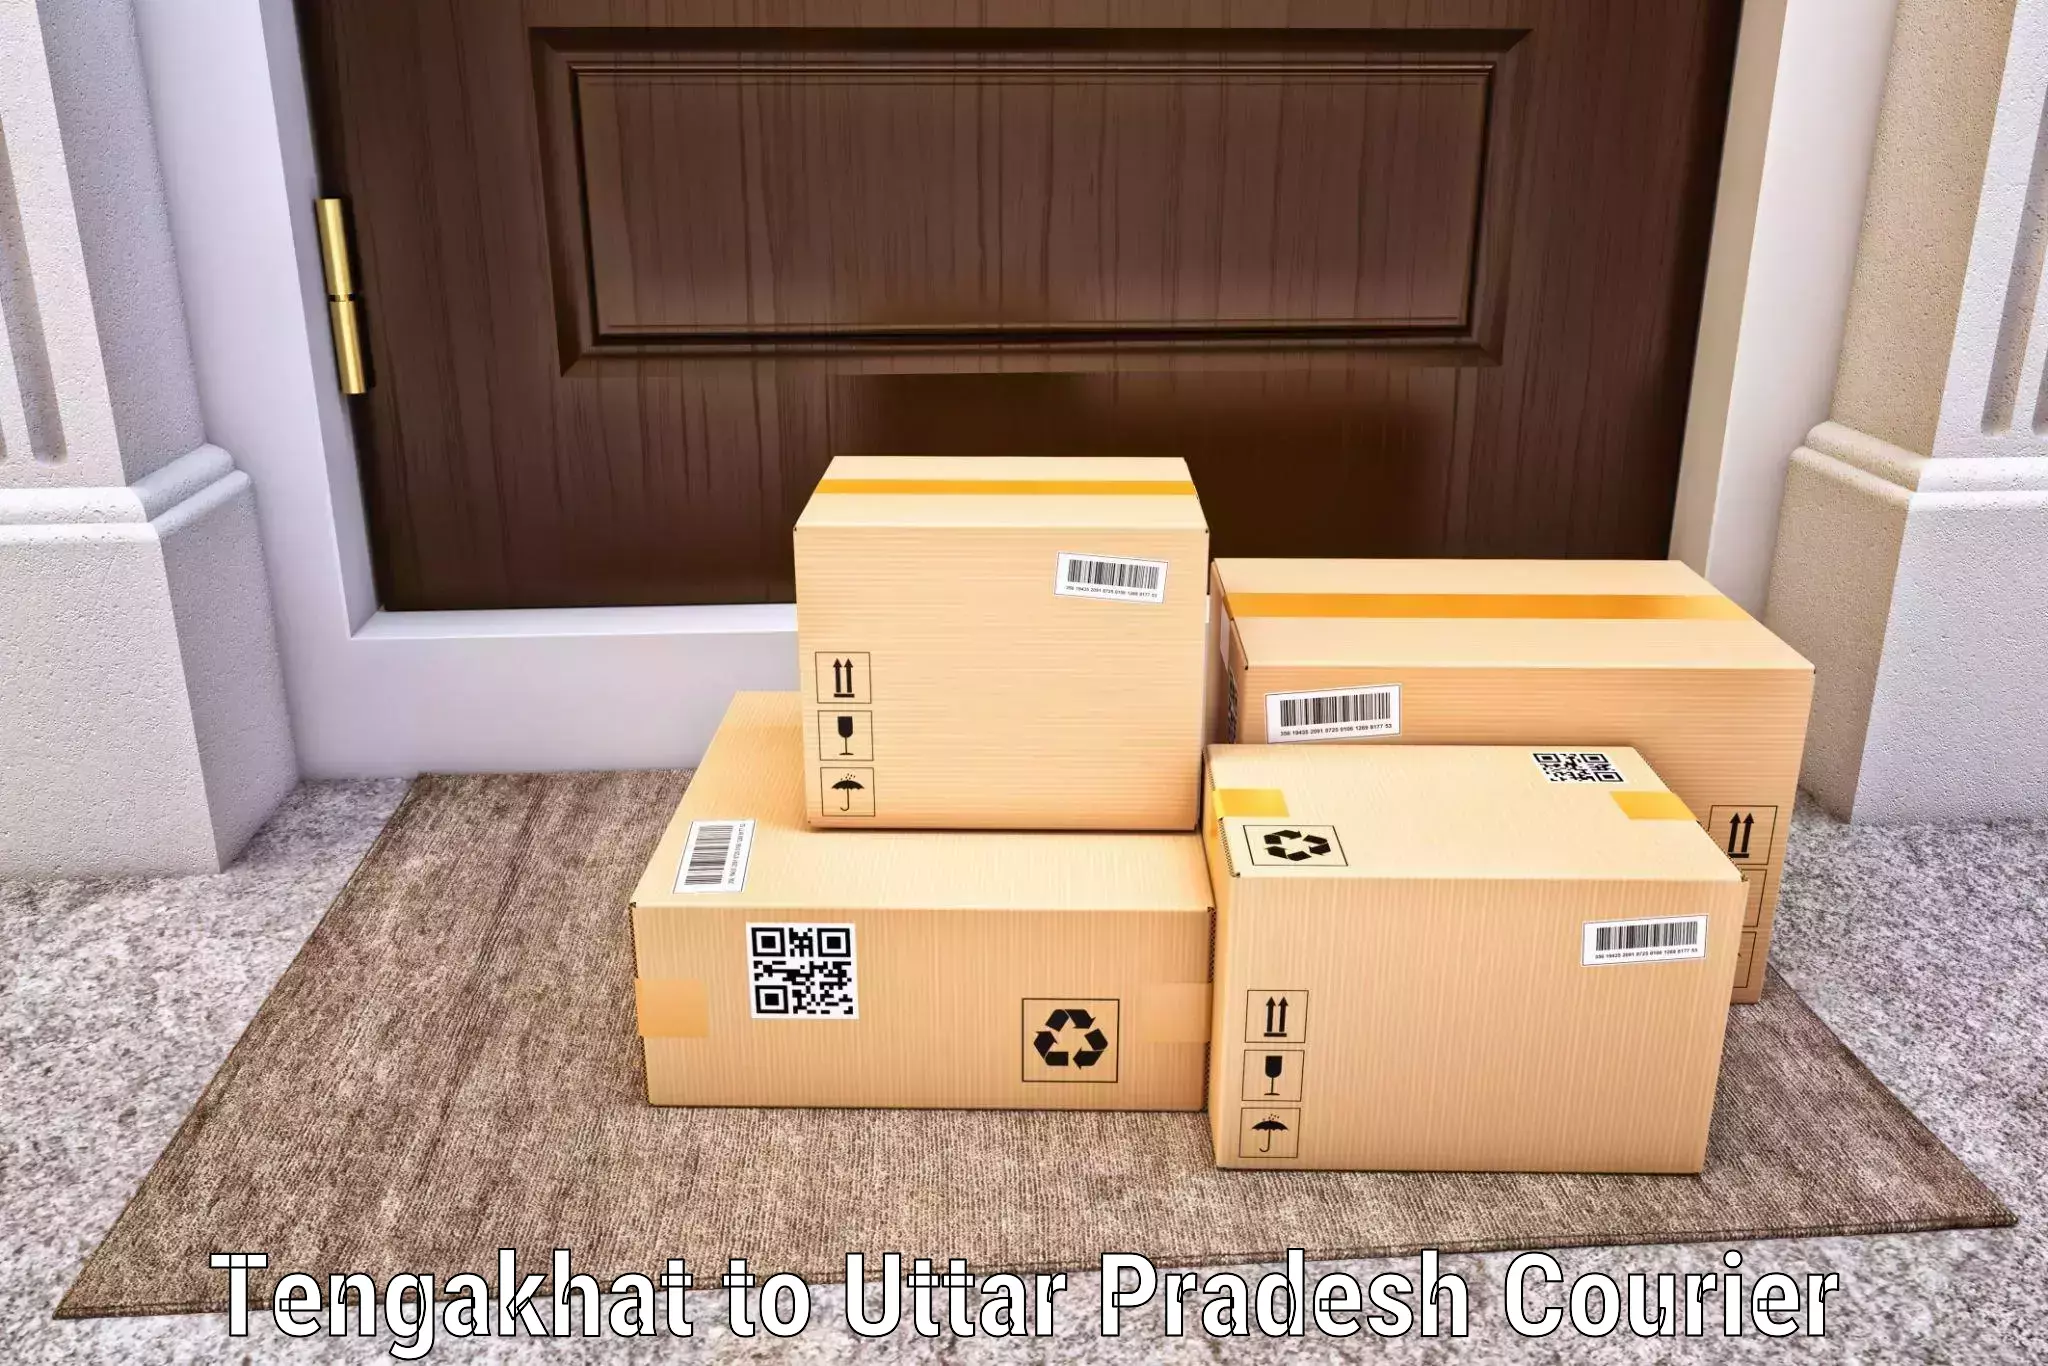 Affordable parcel service Tengakhat to Prayagraj